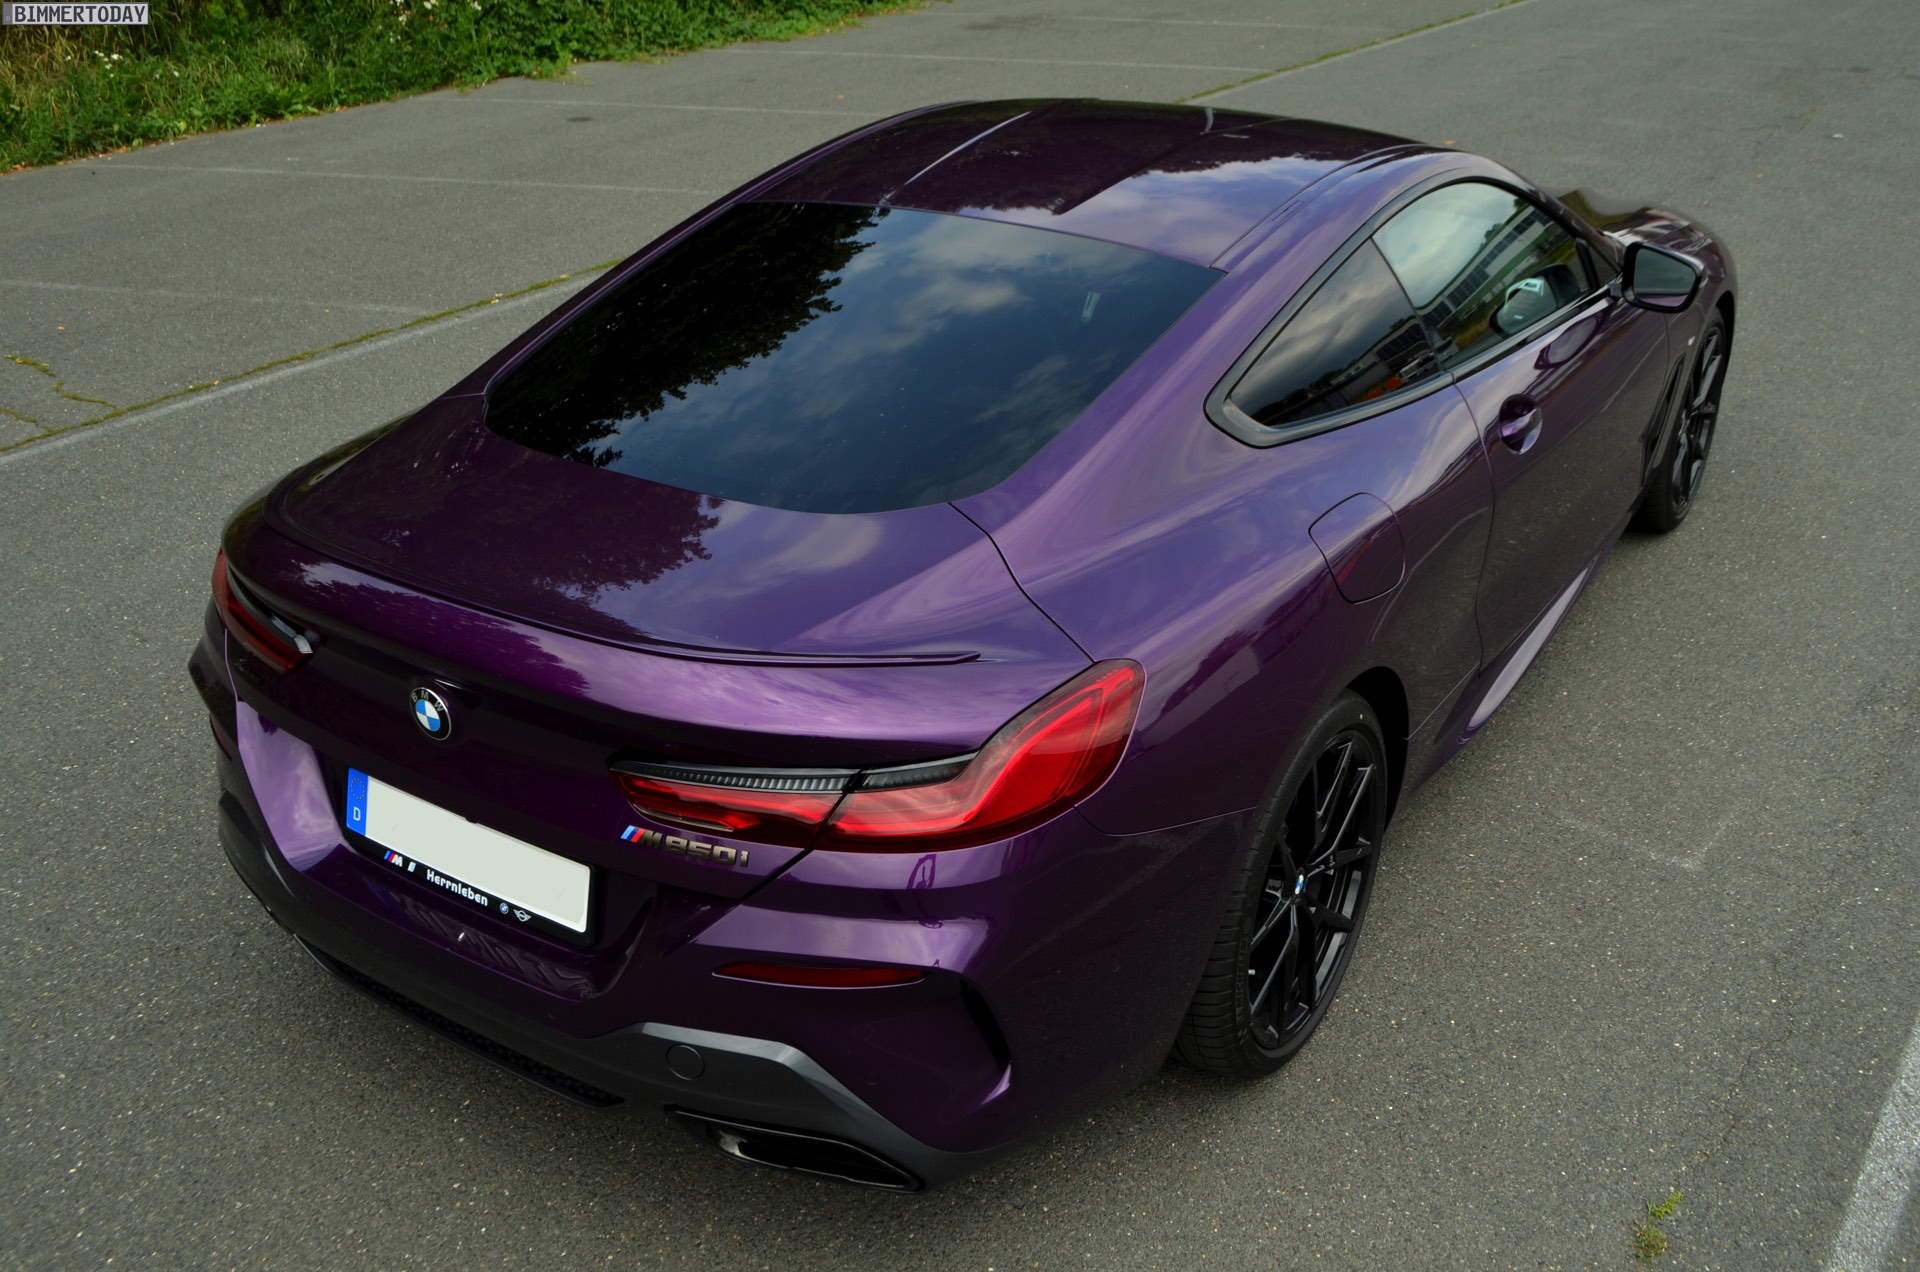 BMW Serie 8 Coupé color Twilight Purple - più unica che rara! - BMWpassion  blog